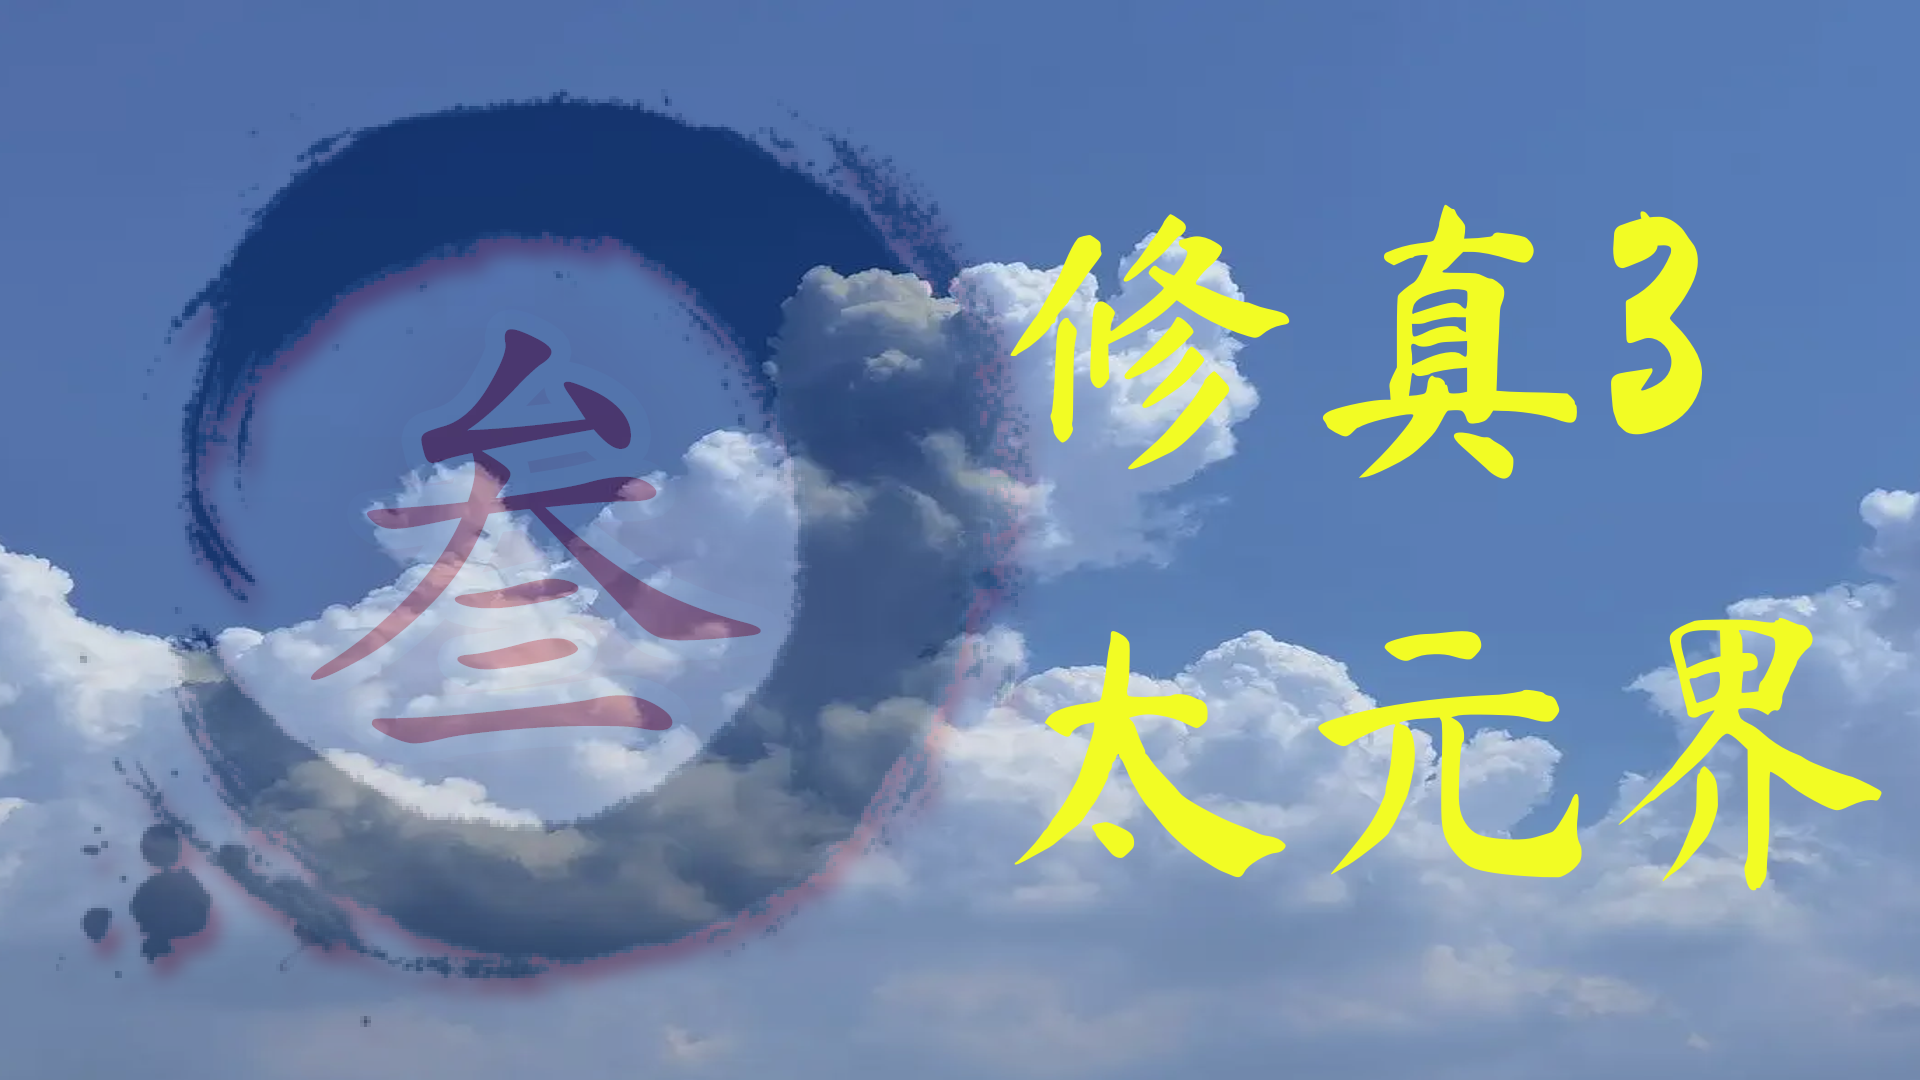 Banner of Paglilinang 3 Taiyuan Realm 1.68